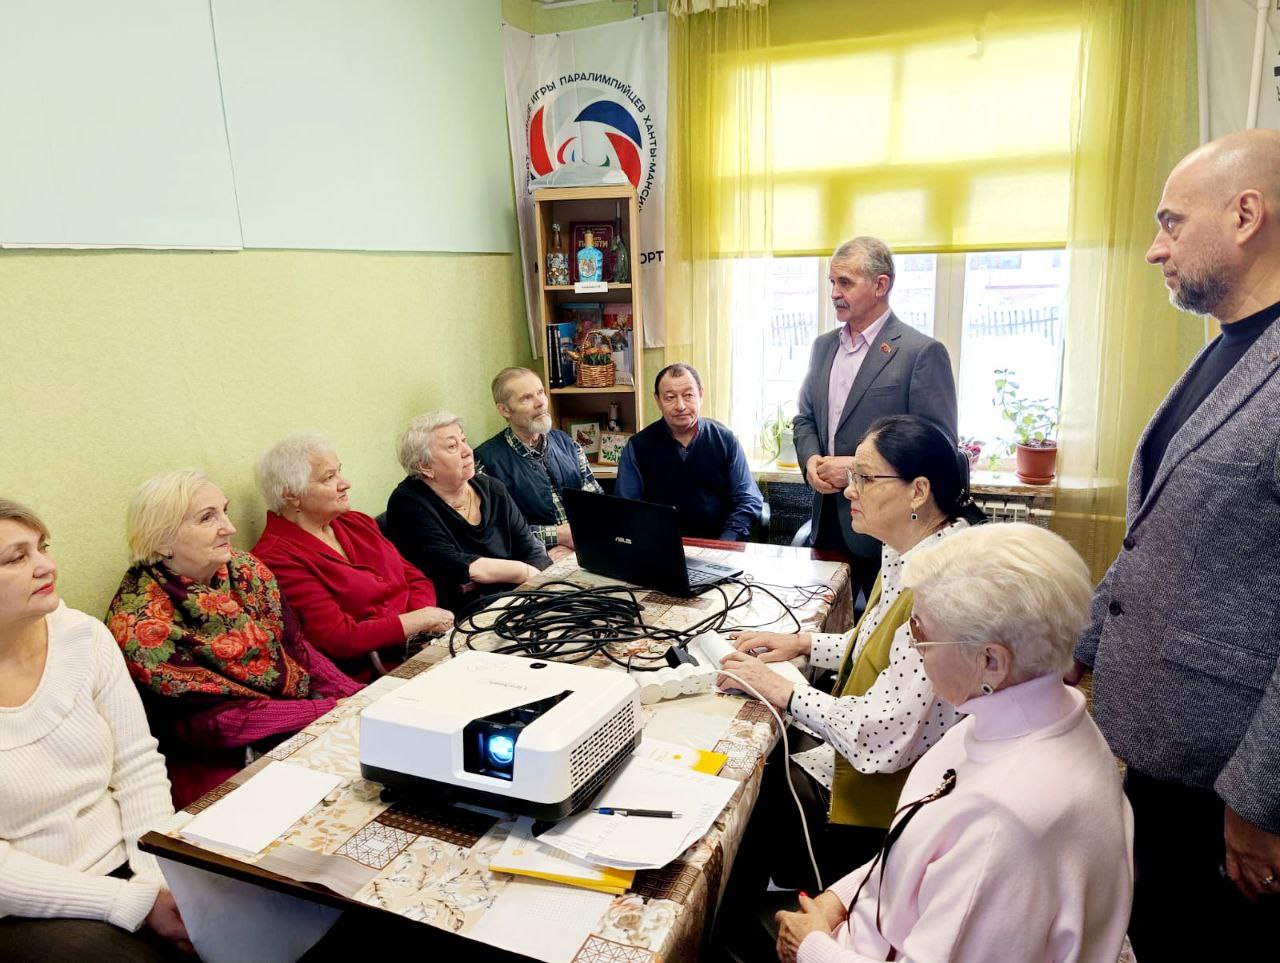  Владимир Шапкин: «На встречах обсуждаем актуальные вопросы, в том числе в сфере здравоохранения» - фото 2